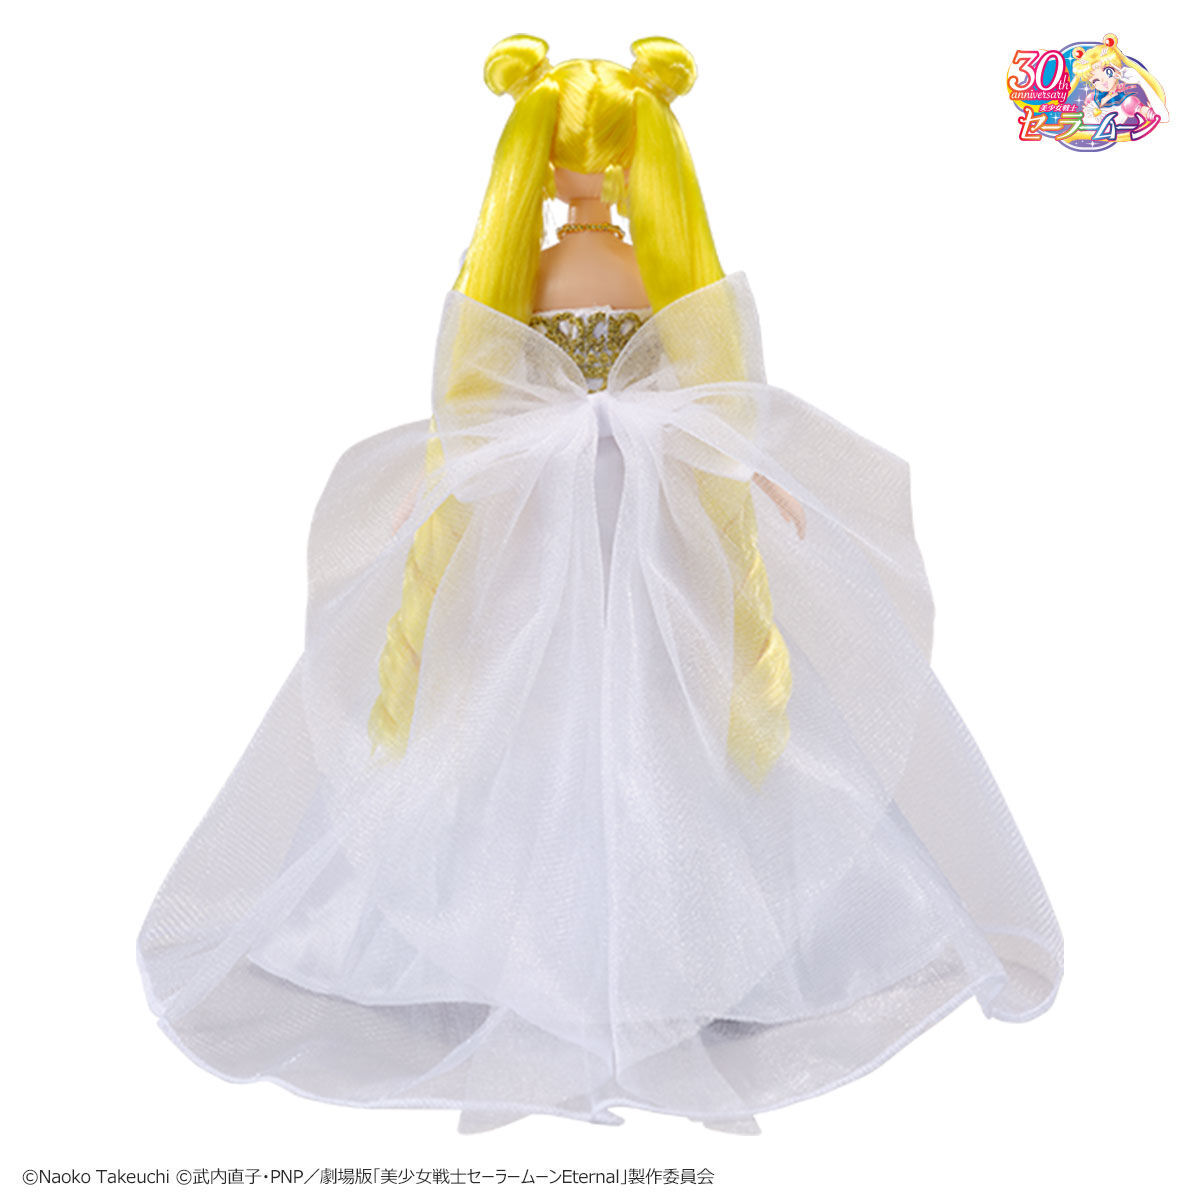 Sailor Moon Princess Serenity